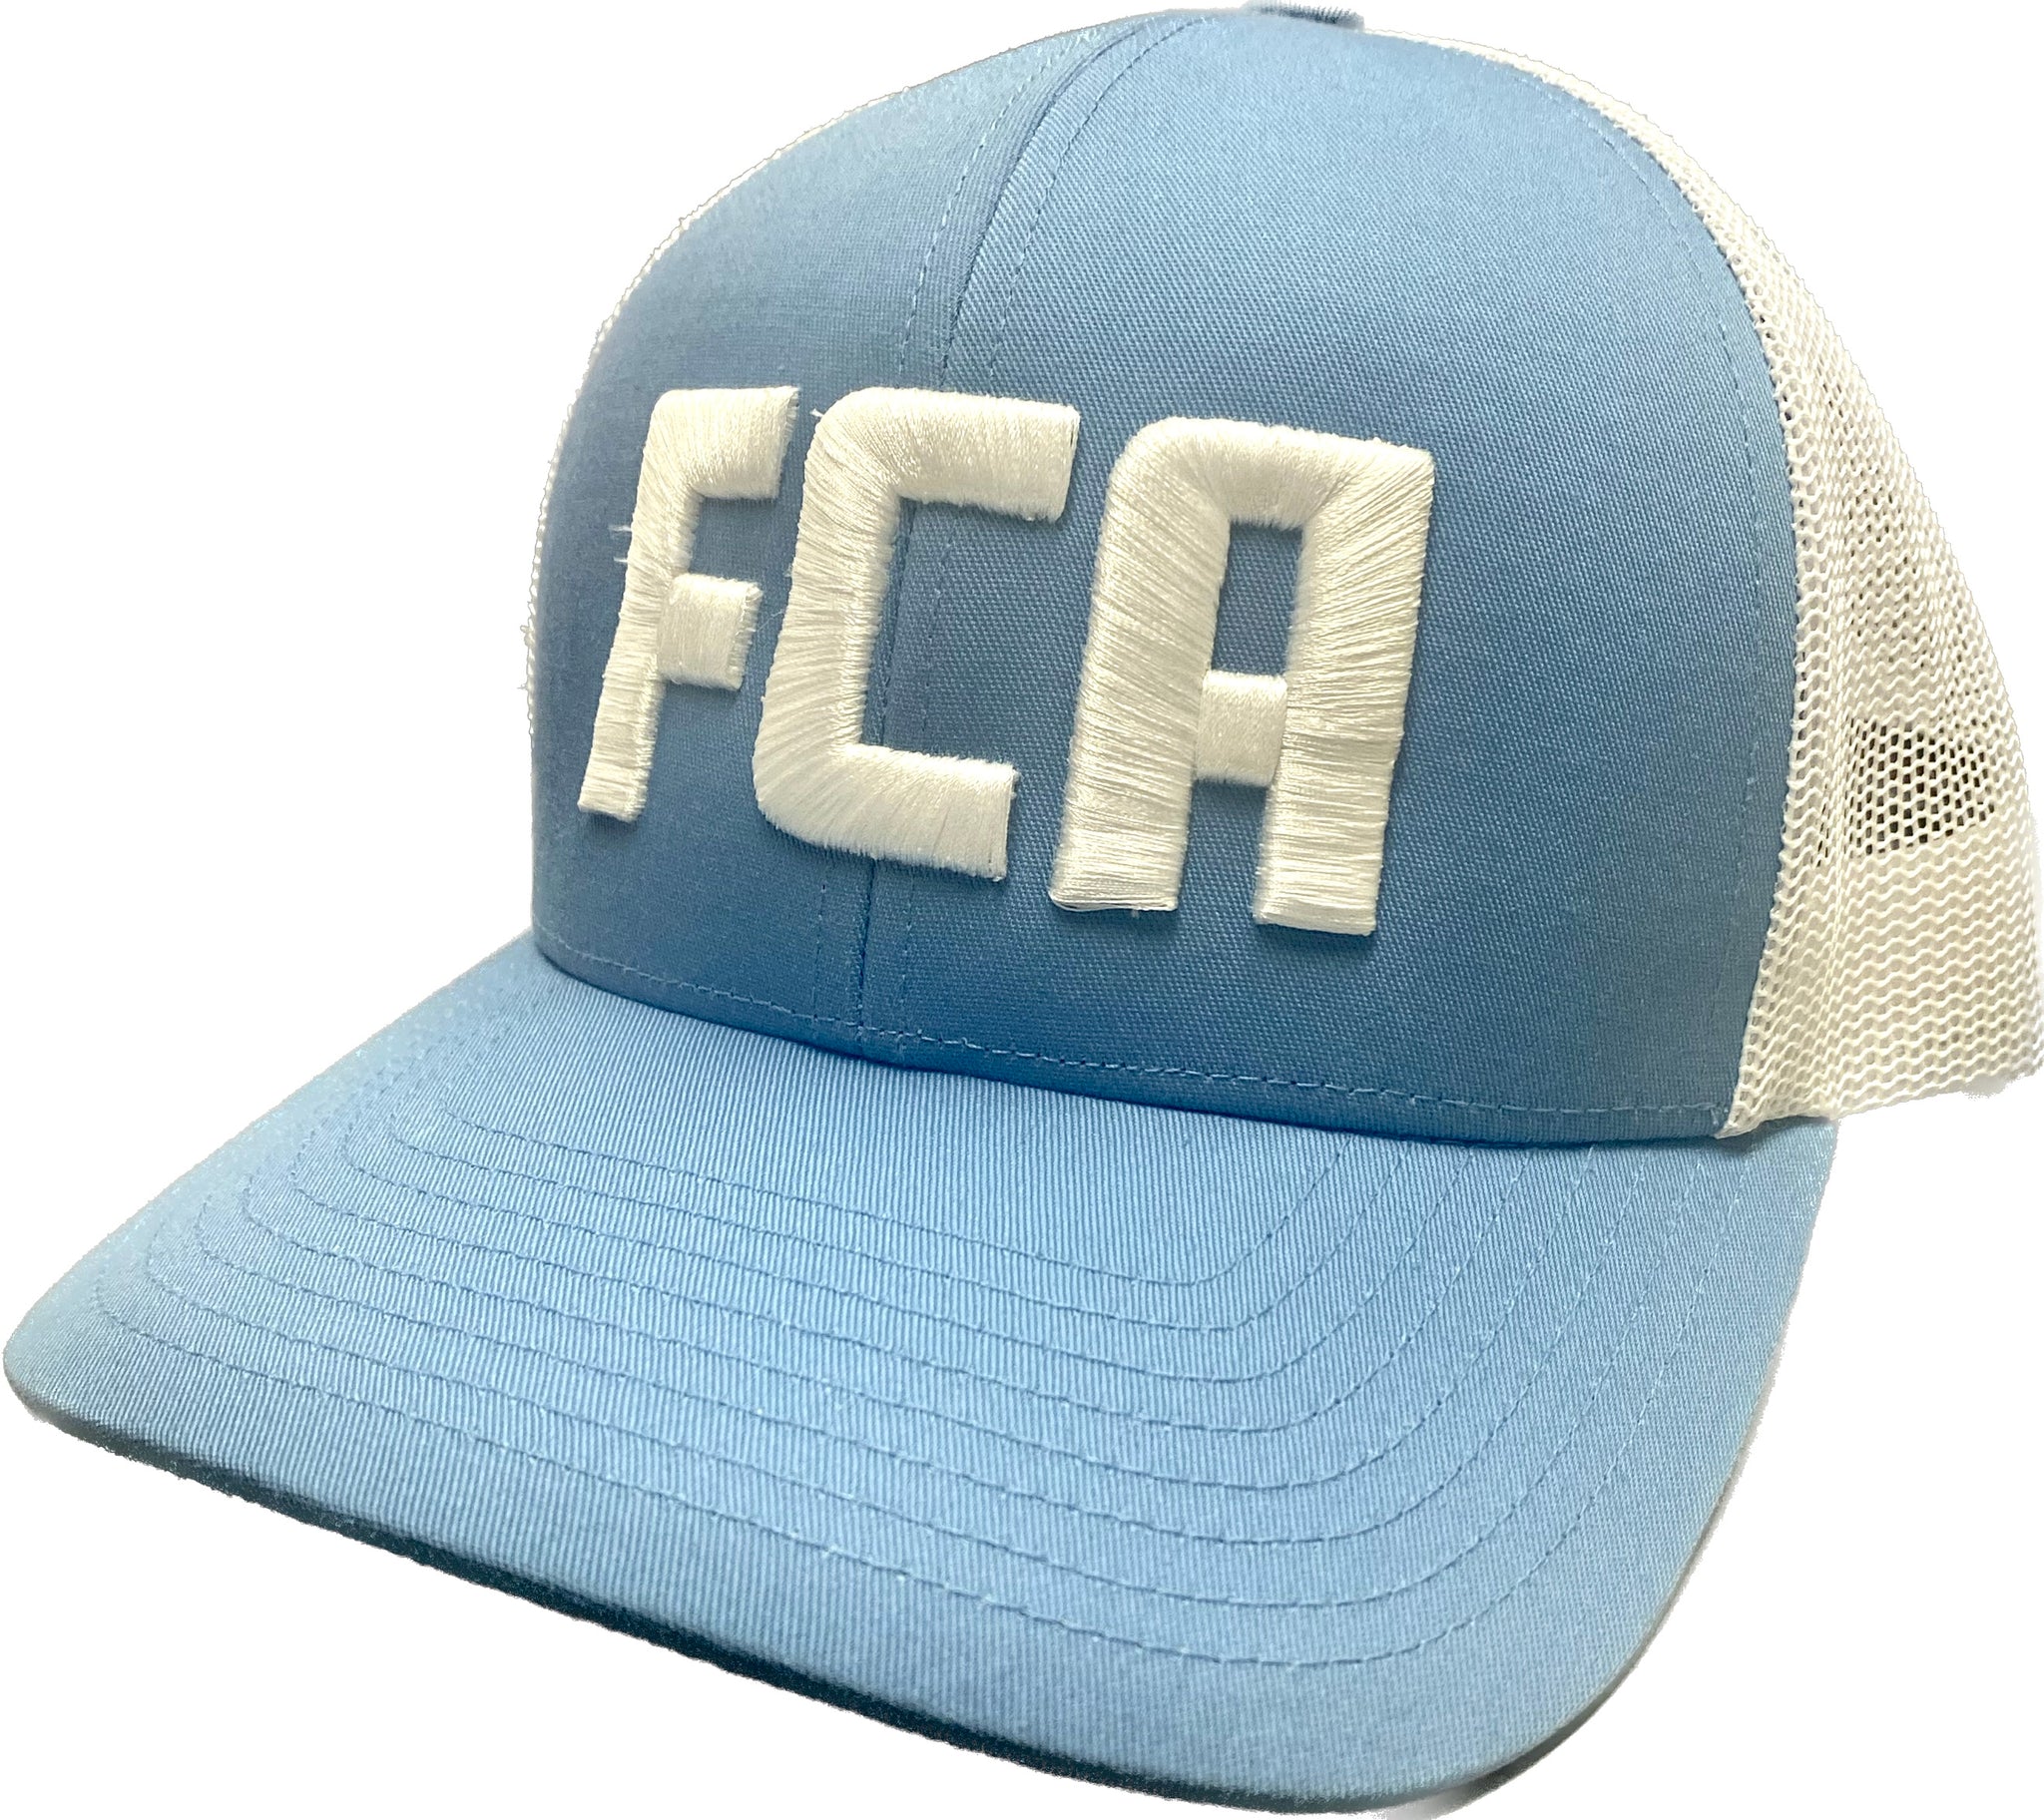 FCA Hat